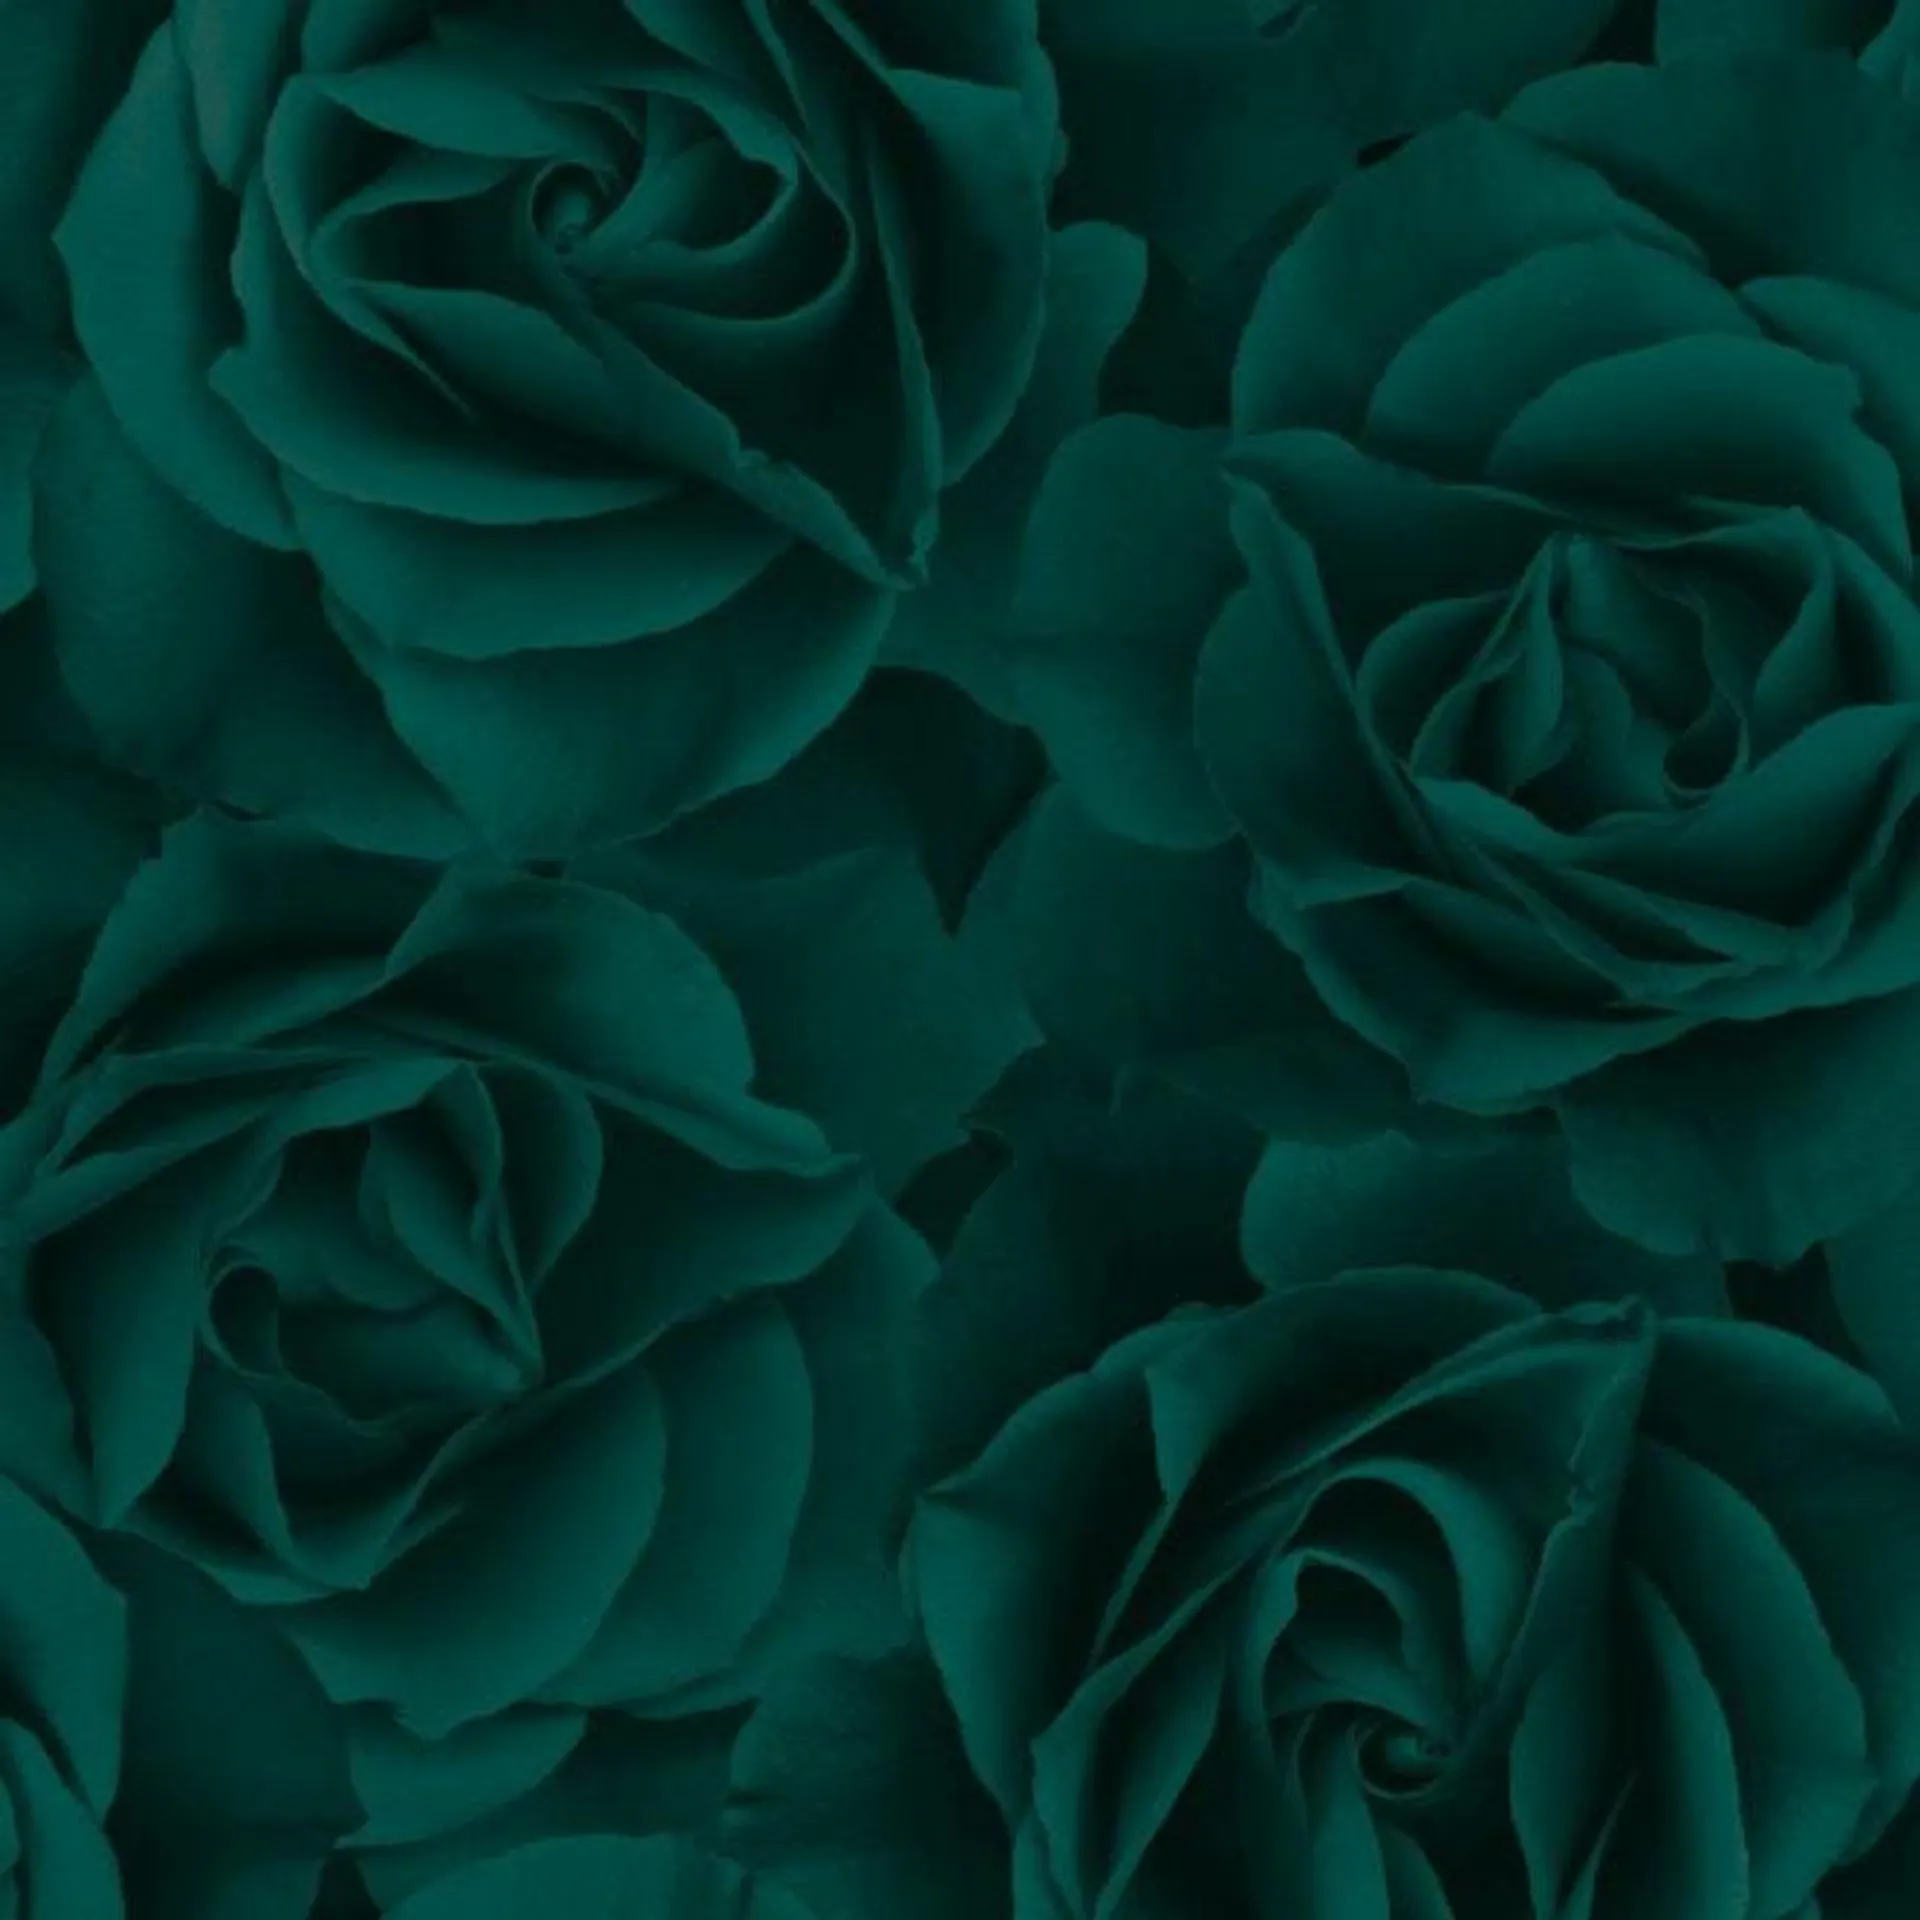 Big Rose wallpaper in emerald